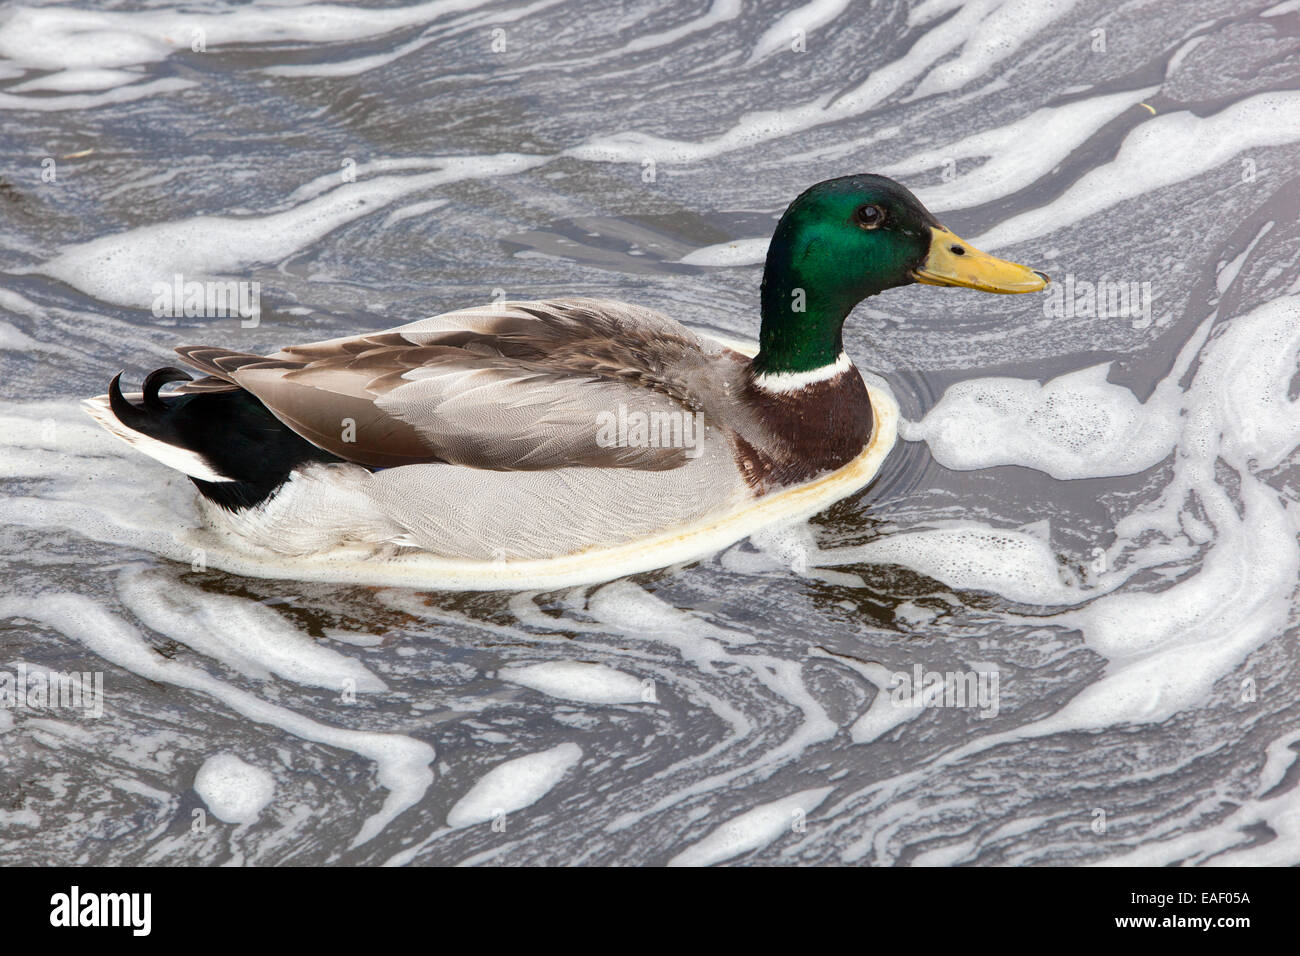 Canard colvert mâle dans la rivière mousseuse, rivière polluée, pollution de l'eau oiseau de canard Banque D'Images